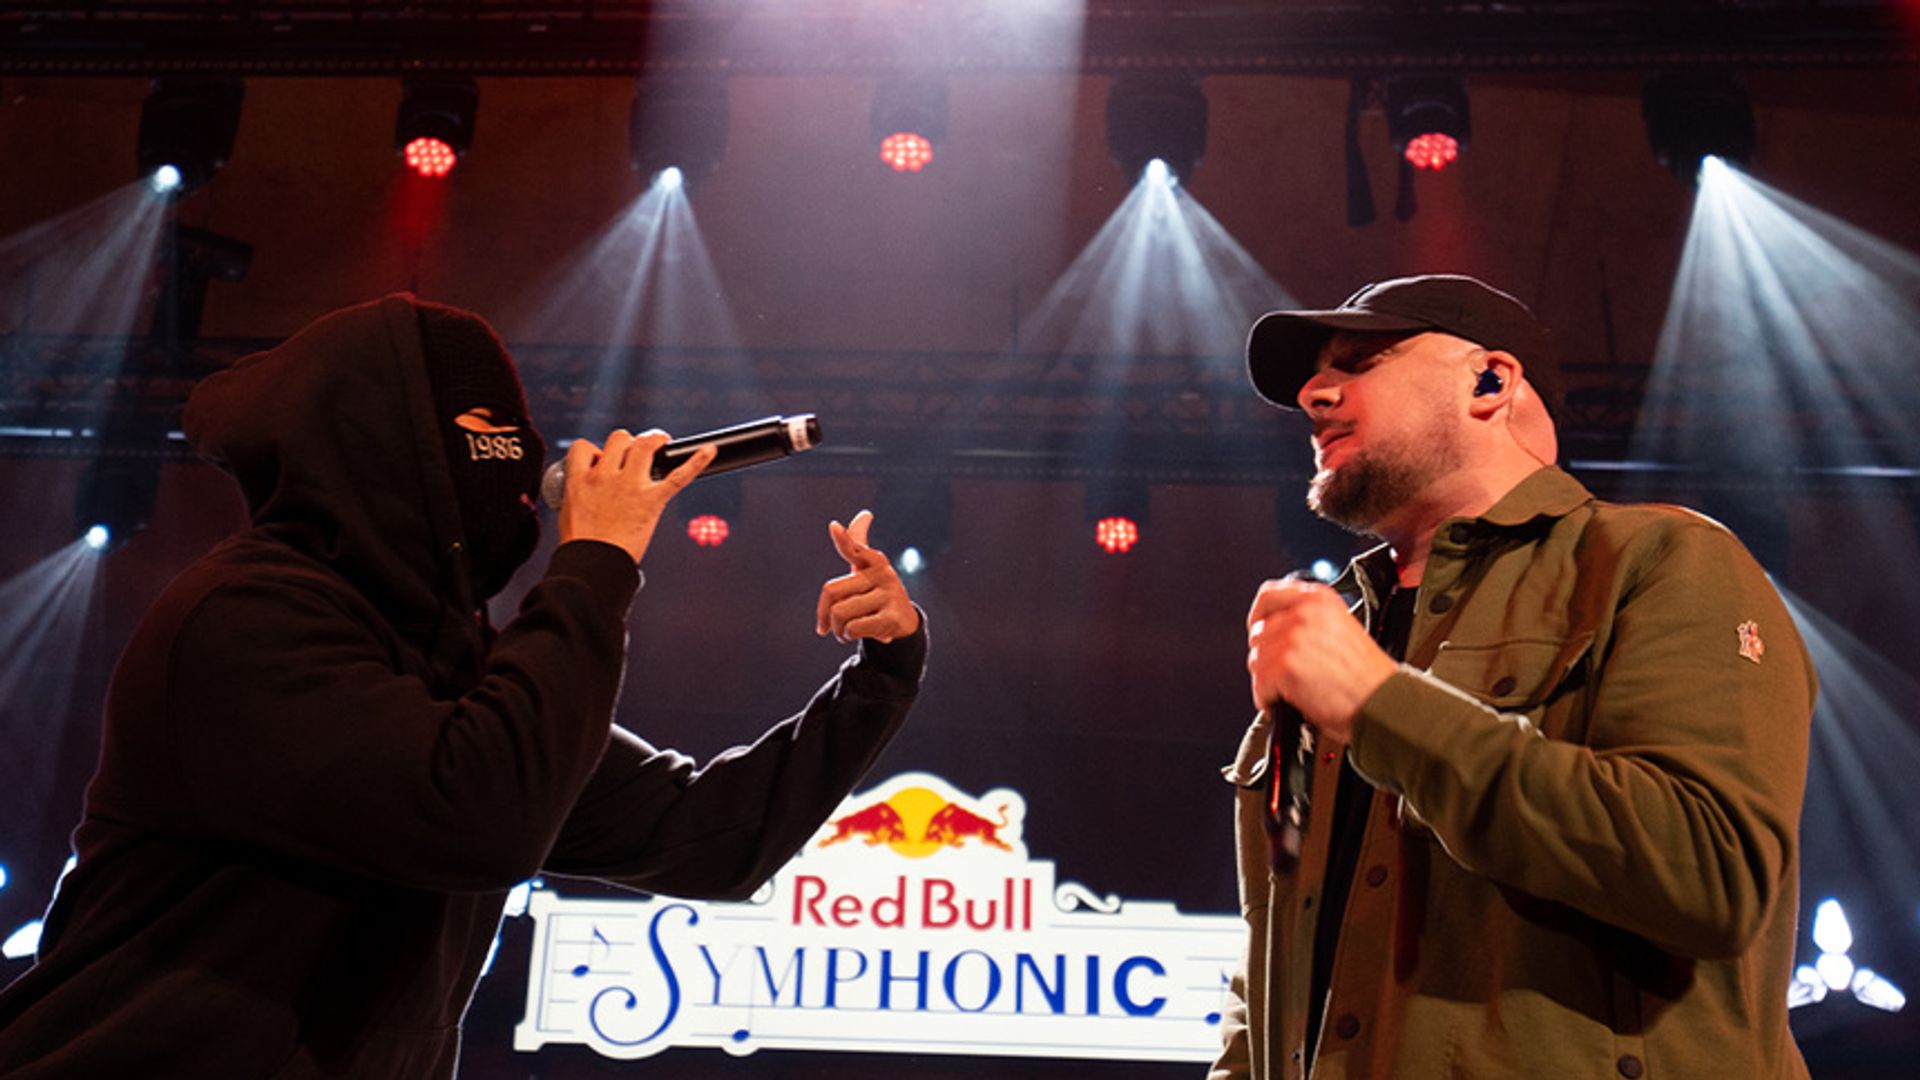 Red Bull Symphonic mit Kool Savas